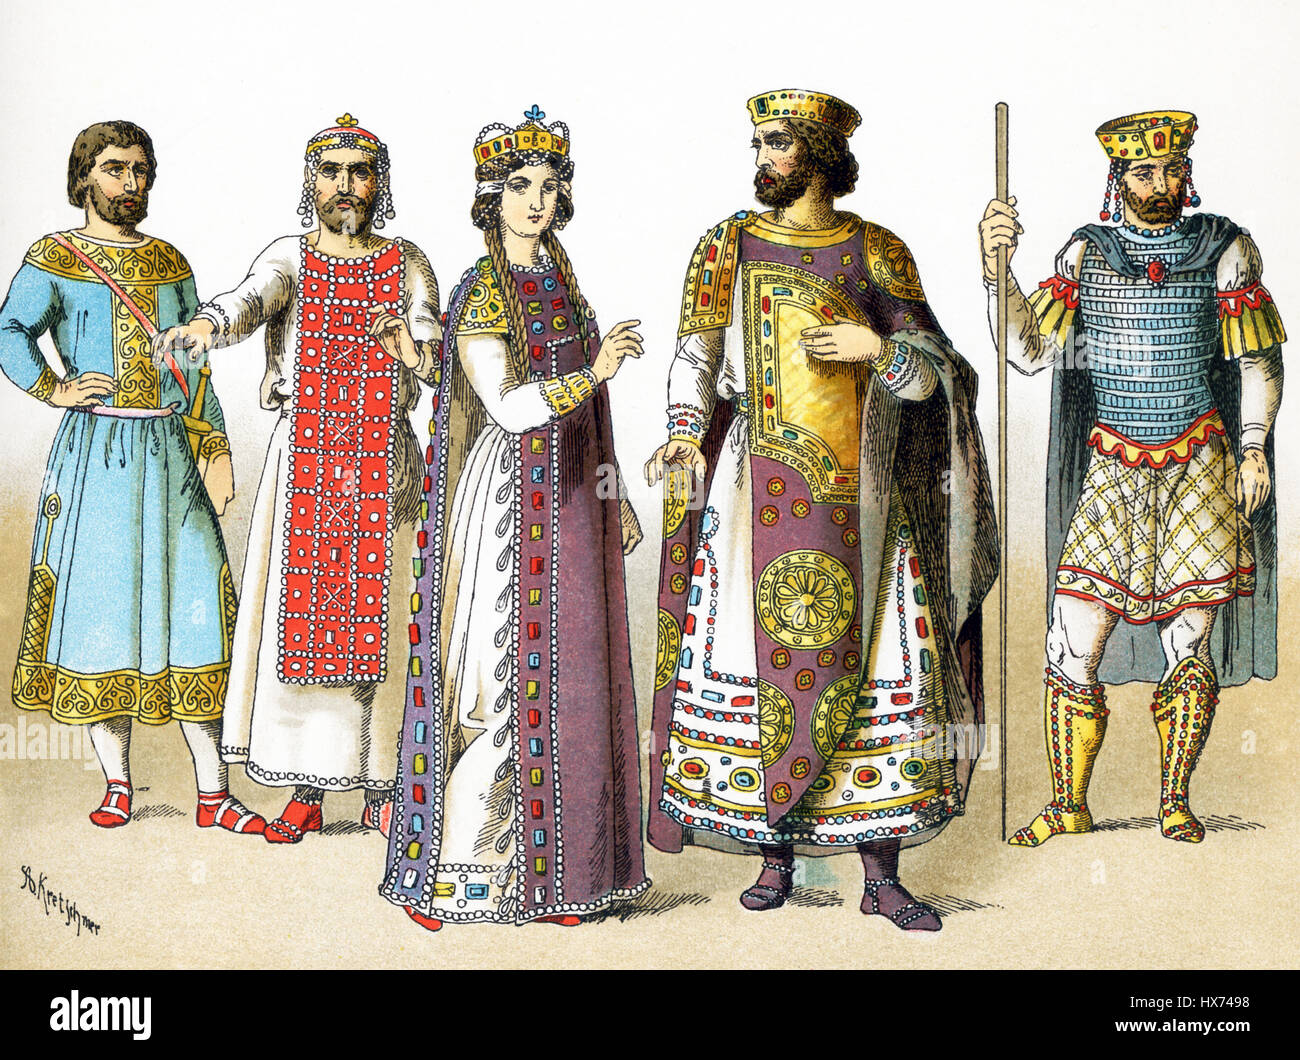 L'illustrazione qui highlights bizantini tra 800 e 1000 A.D. Da sinistra a destra essi sono: uomo di rango, Basileus in 886, imperatrice bizantina, imperatore bizantino, Basileus II nel 1025 D.C. L'illustrazione risale al 1882. Foto Stock